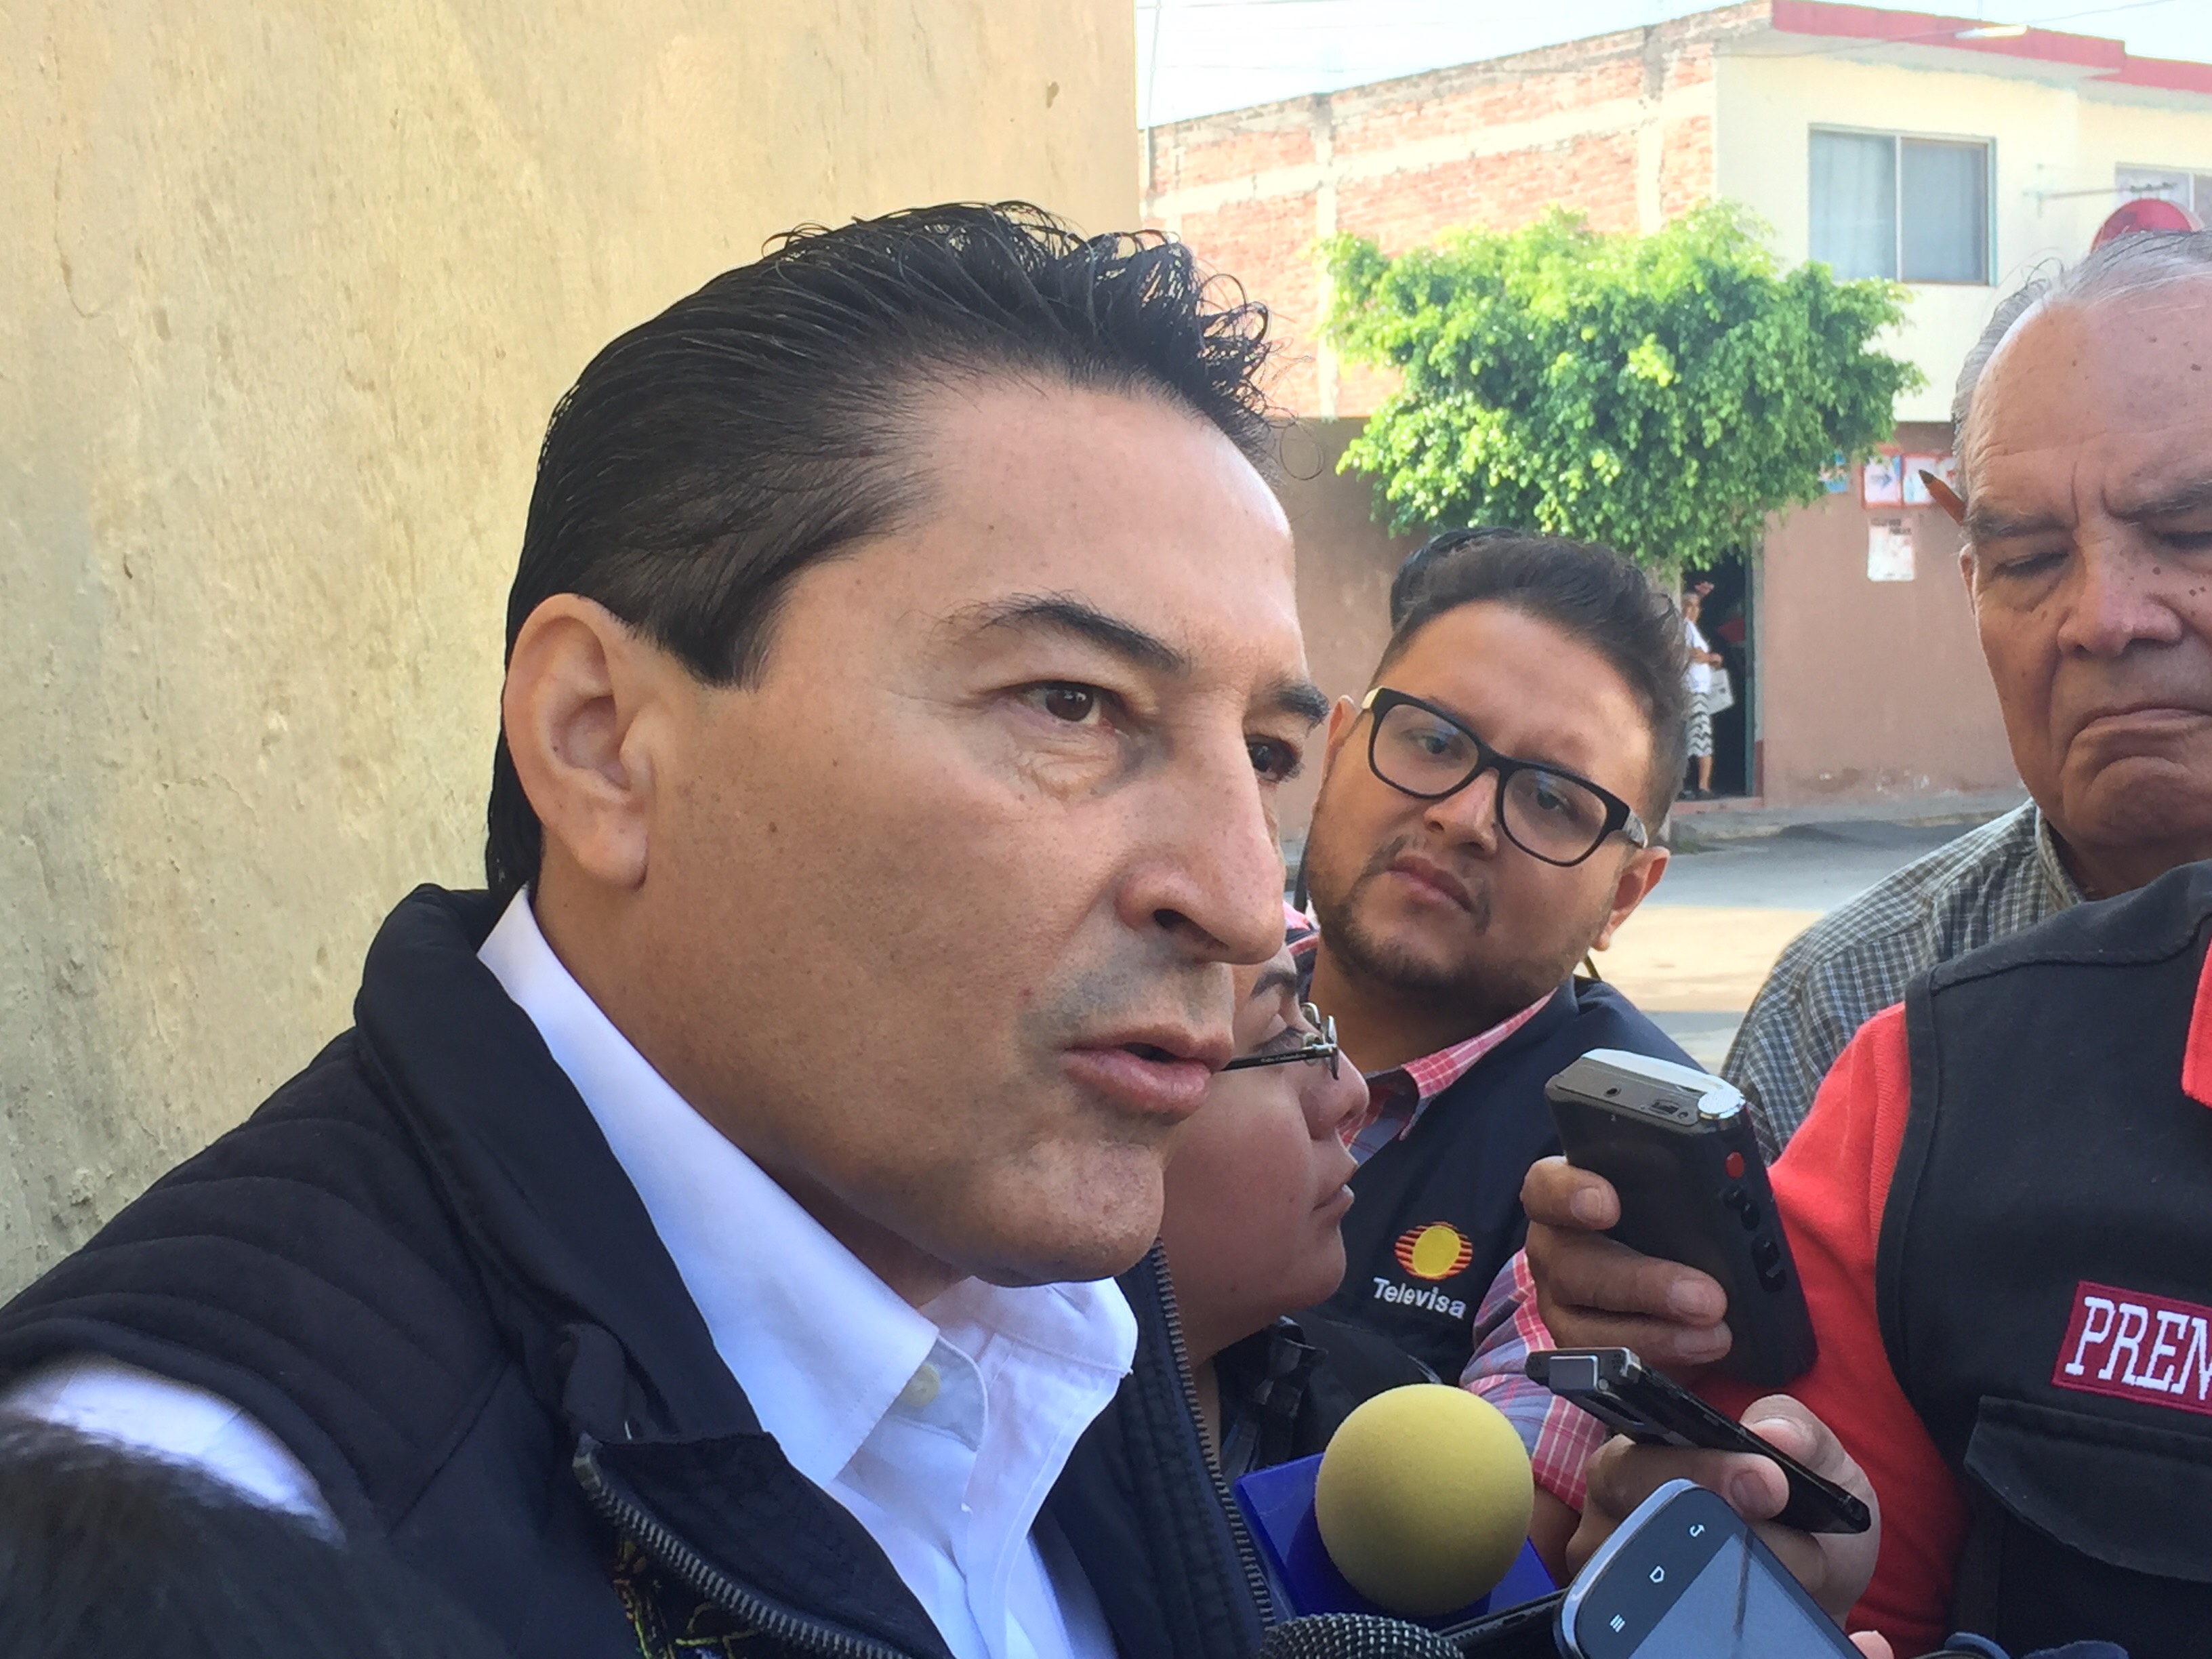  Niega municipio de Querétaro que arcotecho provocara daños a infraestructura en escuela